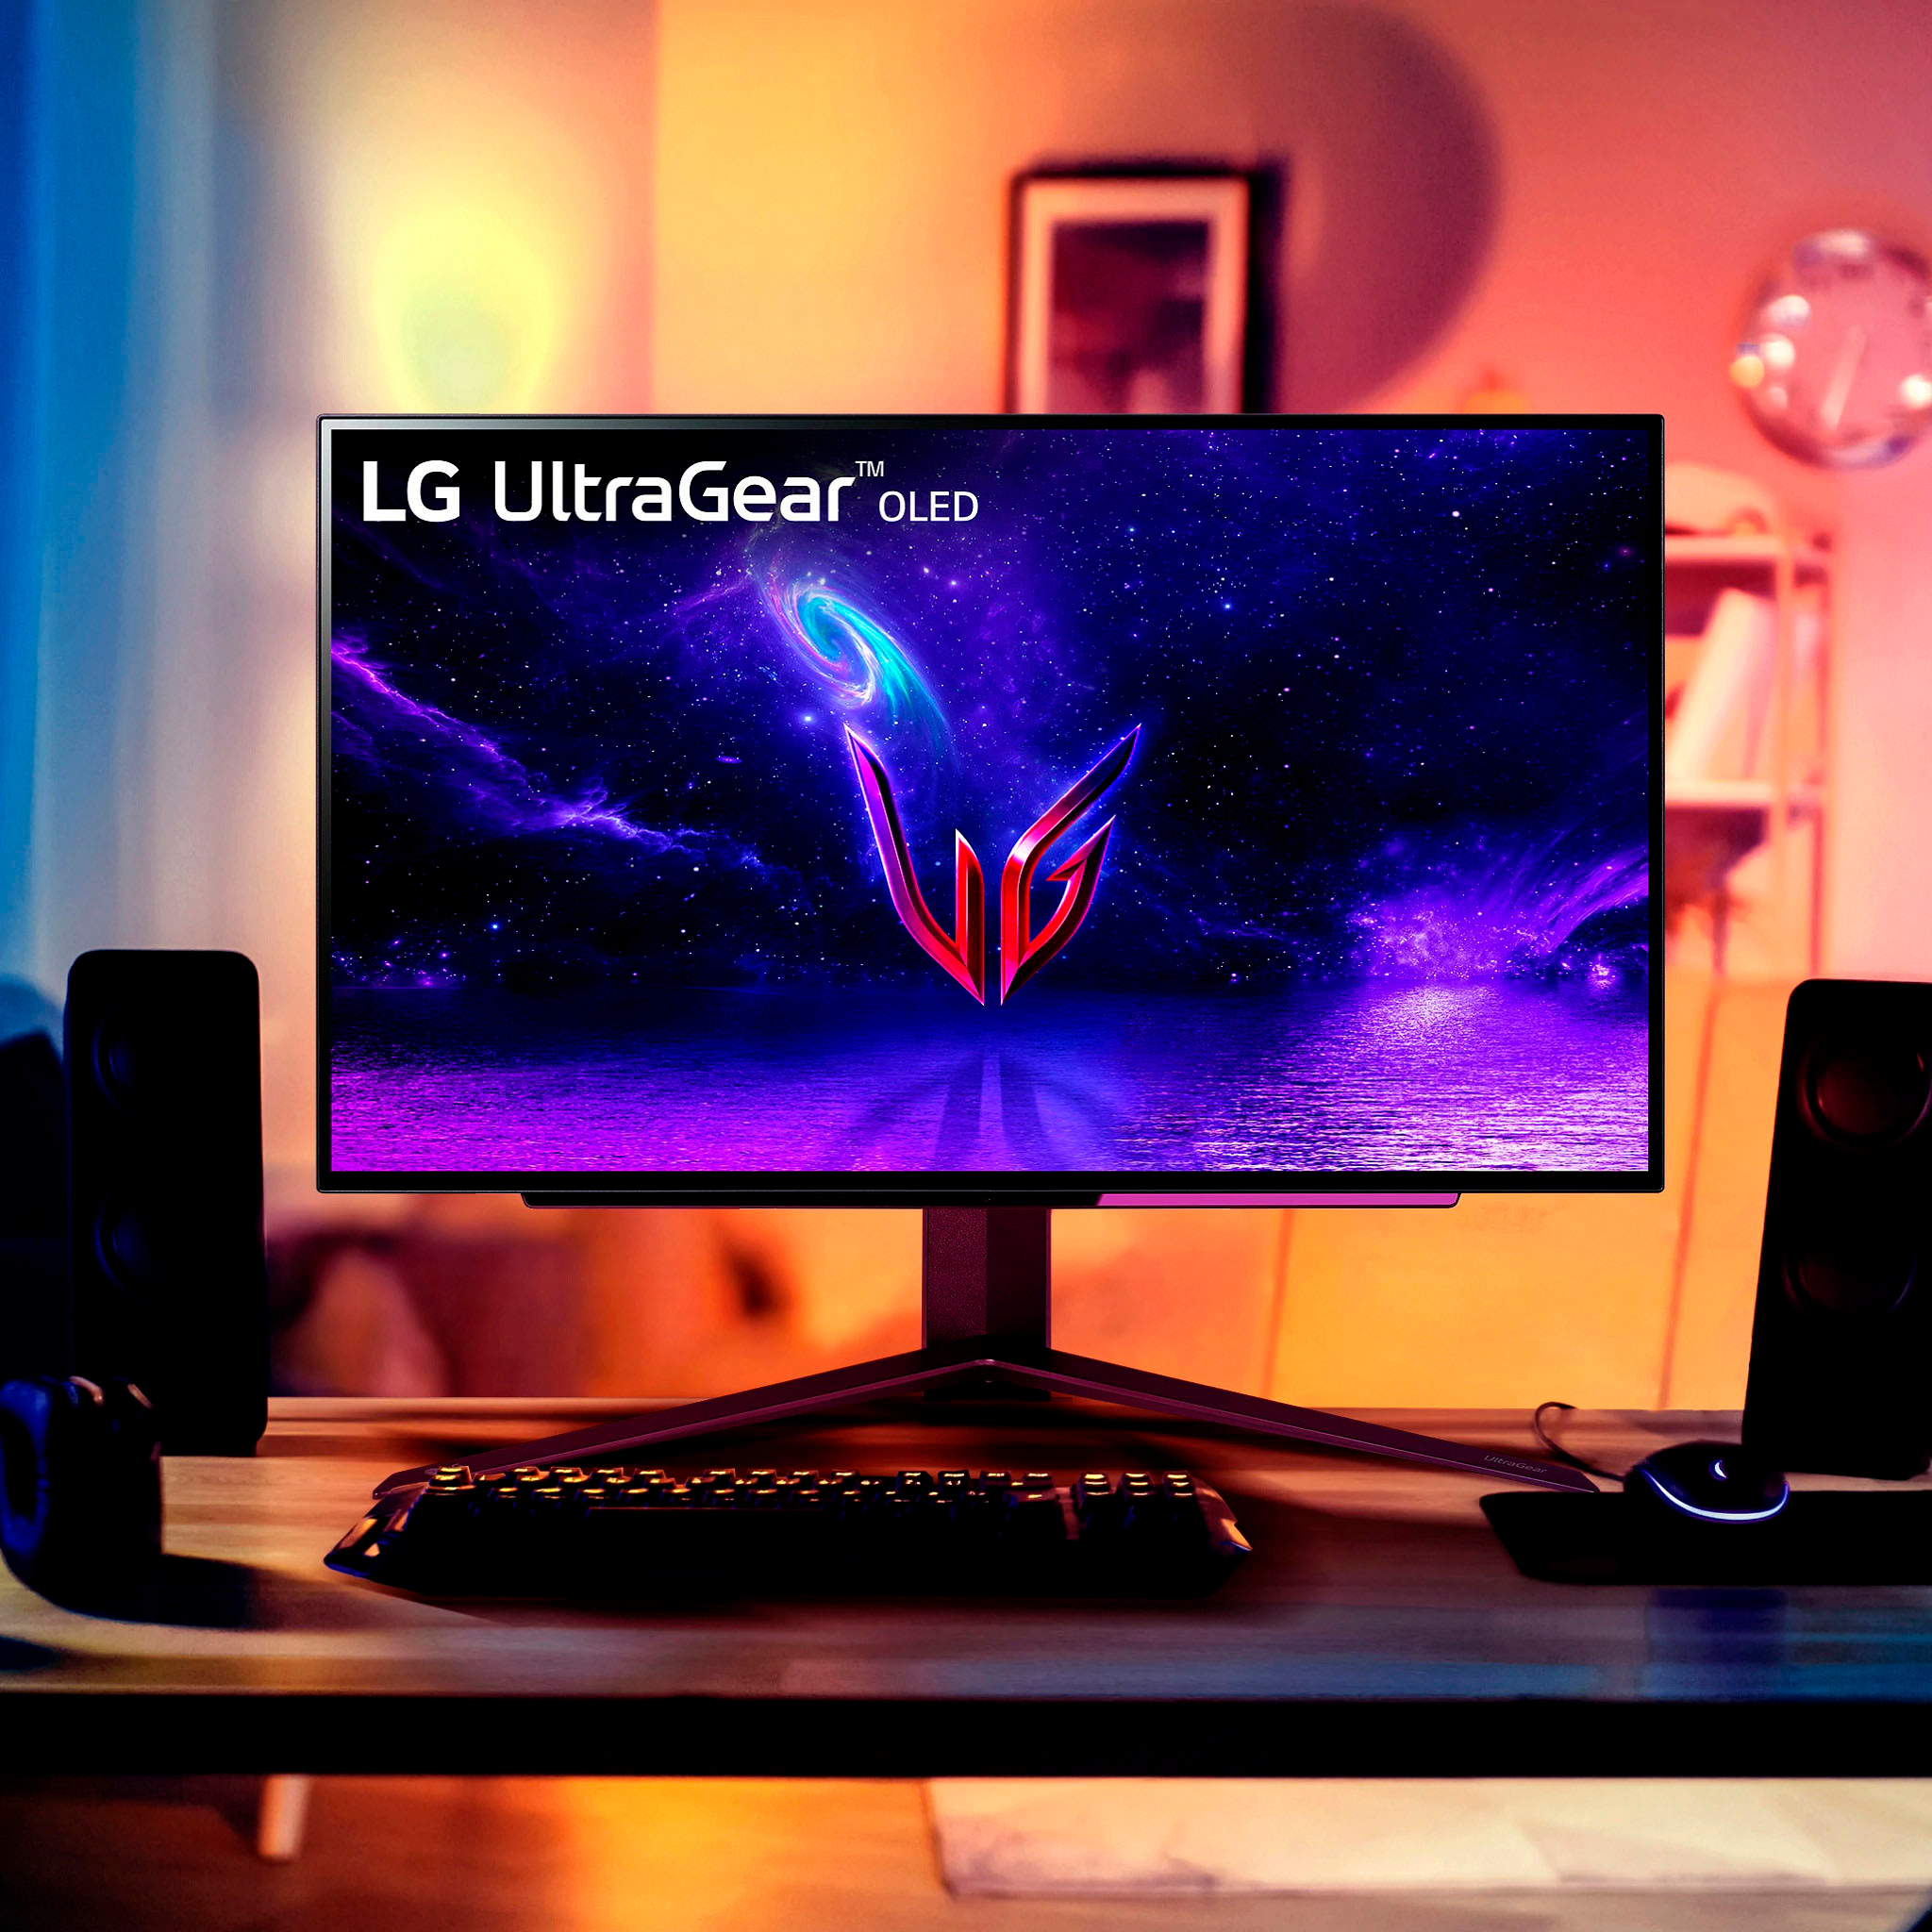 LG UltraGear 27